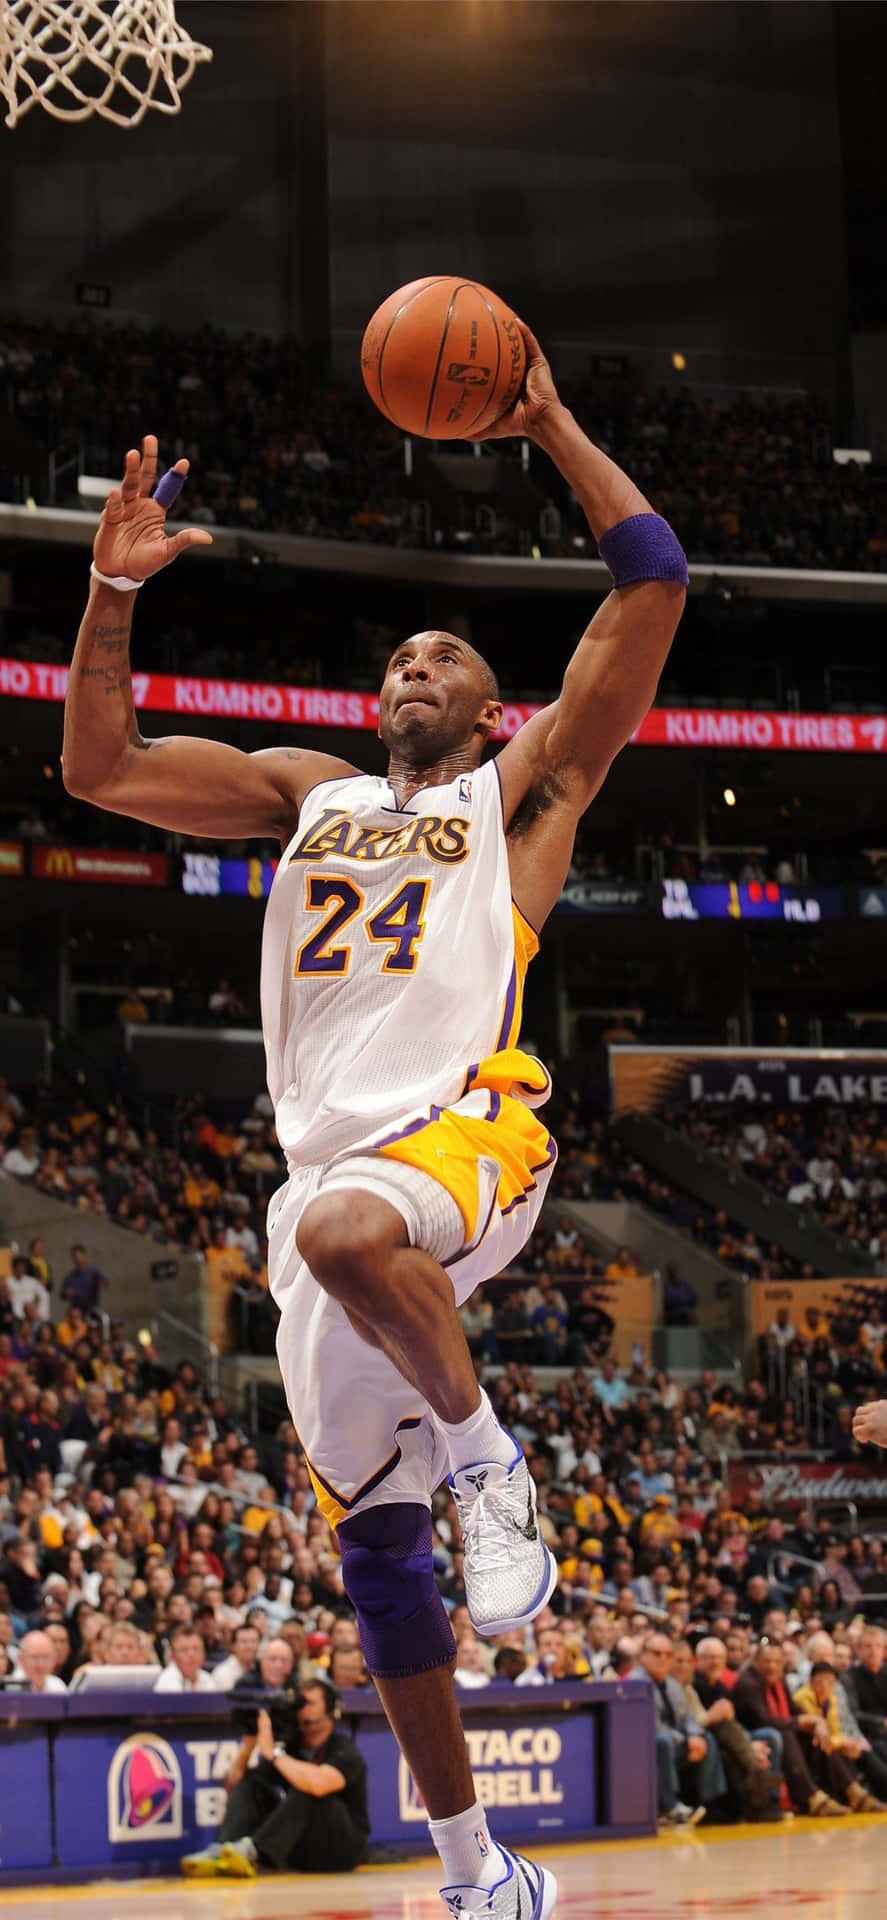 Kobe Bryant - Den bedste basketballspiller nogensinde Wallpaper